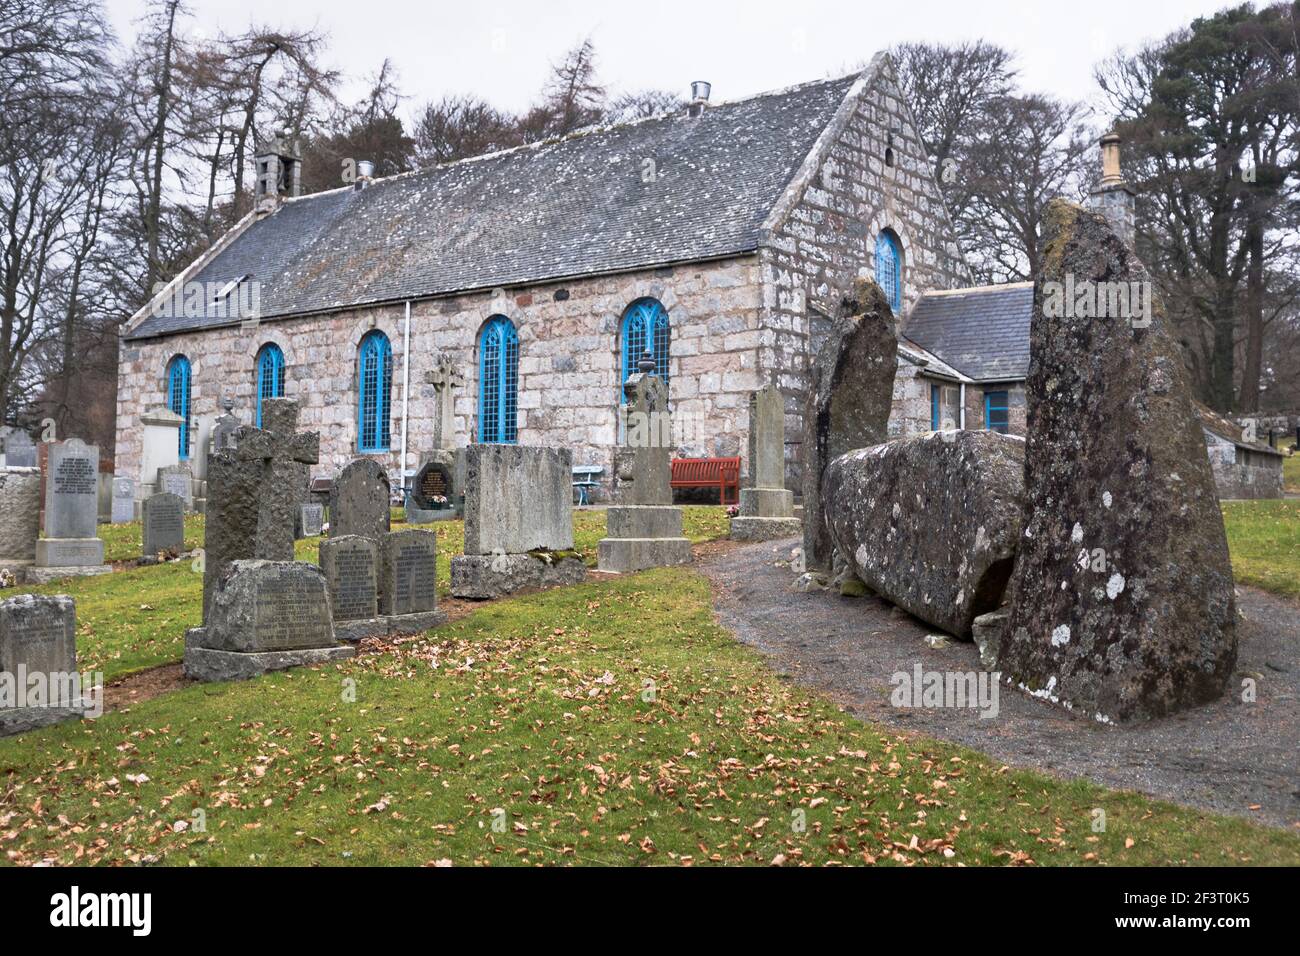 dh ECHT ET MIDMAR KIRK ABERDEENSHIRE Church of Scotland rural Églises écossaises dans le cimetière avec l'âge de bronze Décumbent Stone Circle bâtiment royaume-uni Banque D'Images